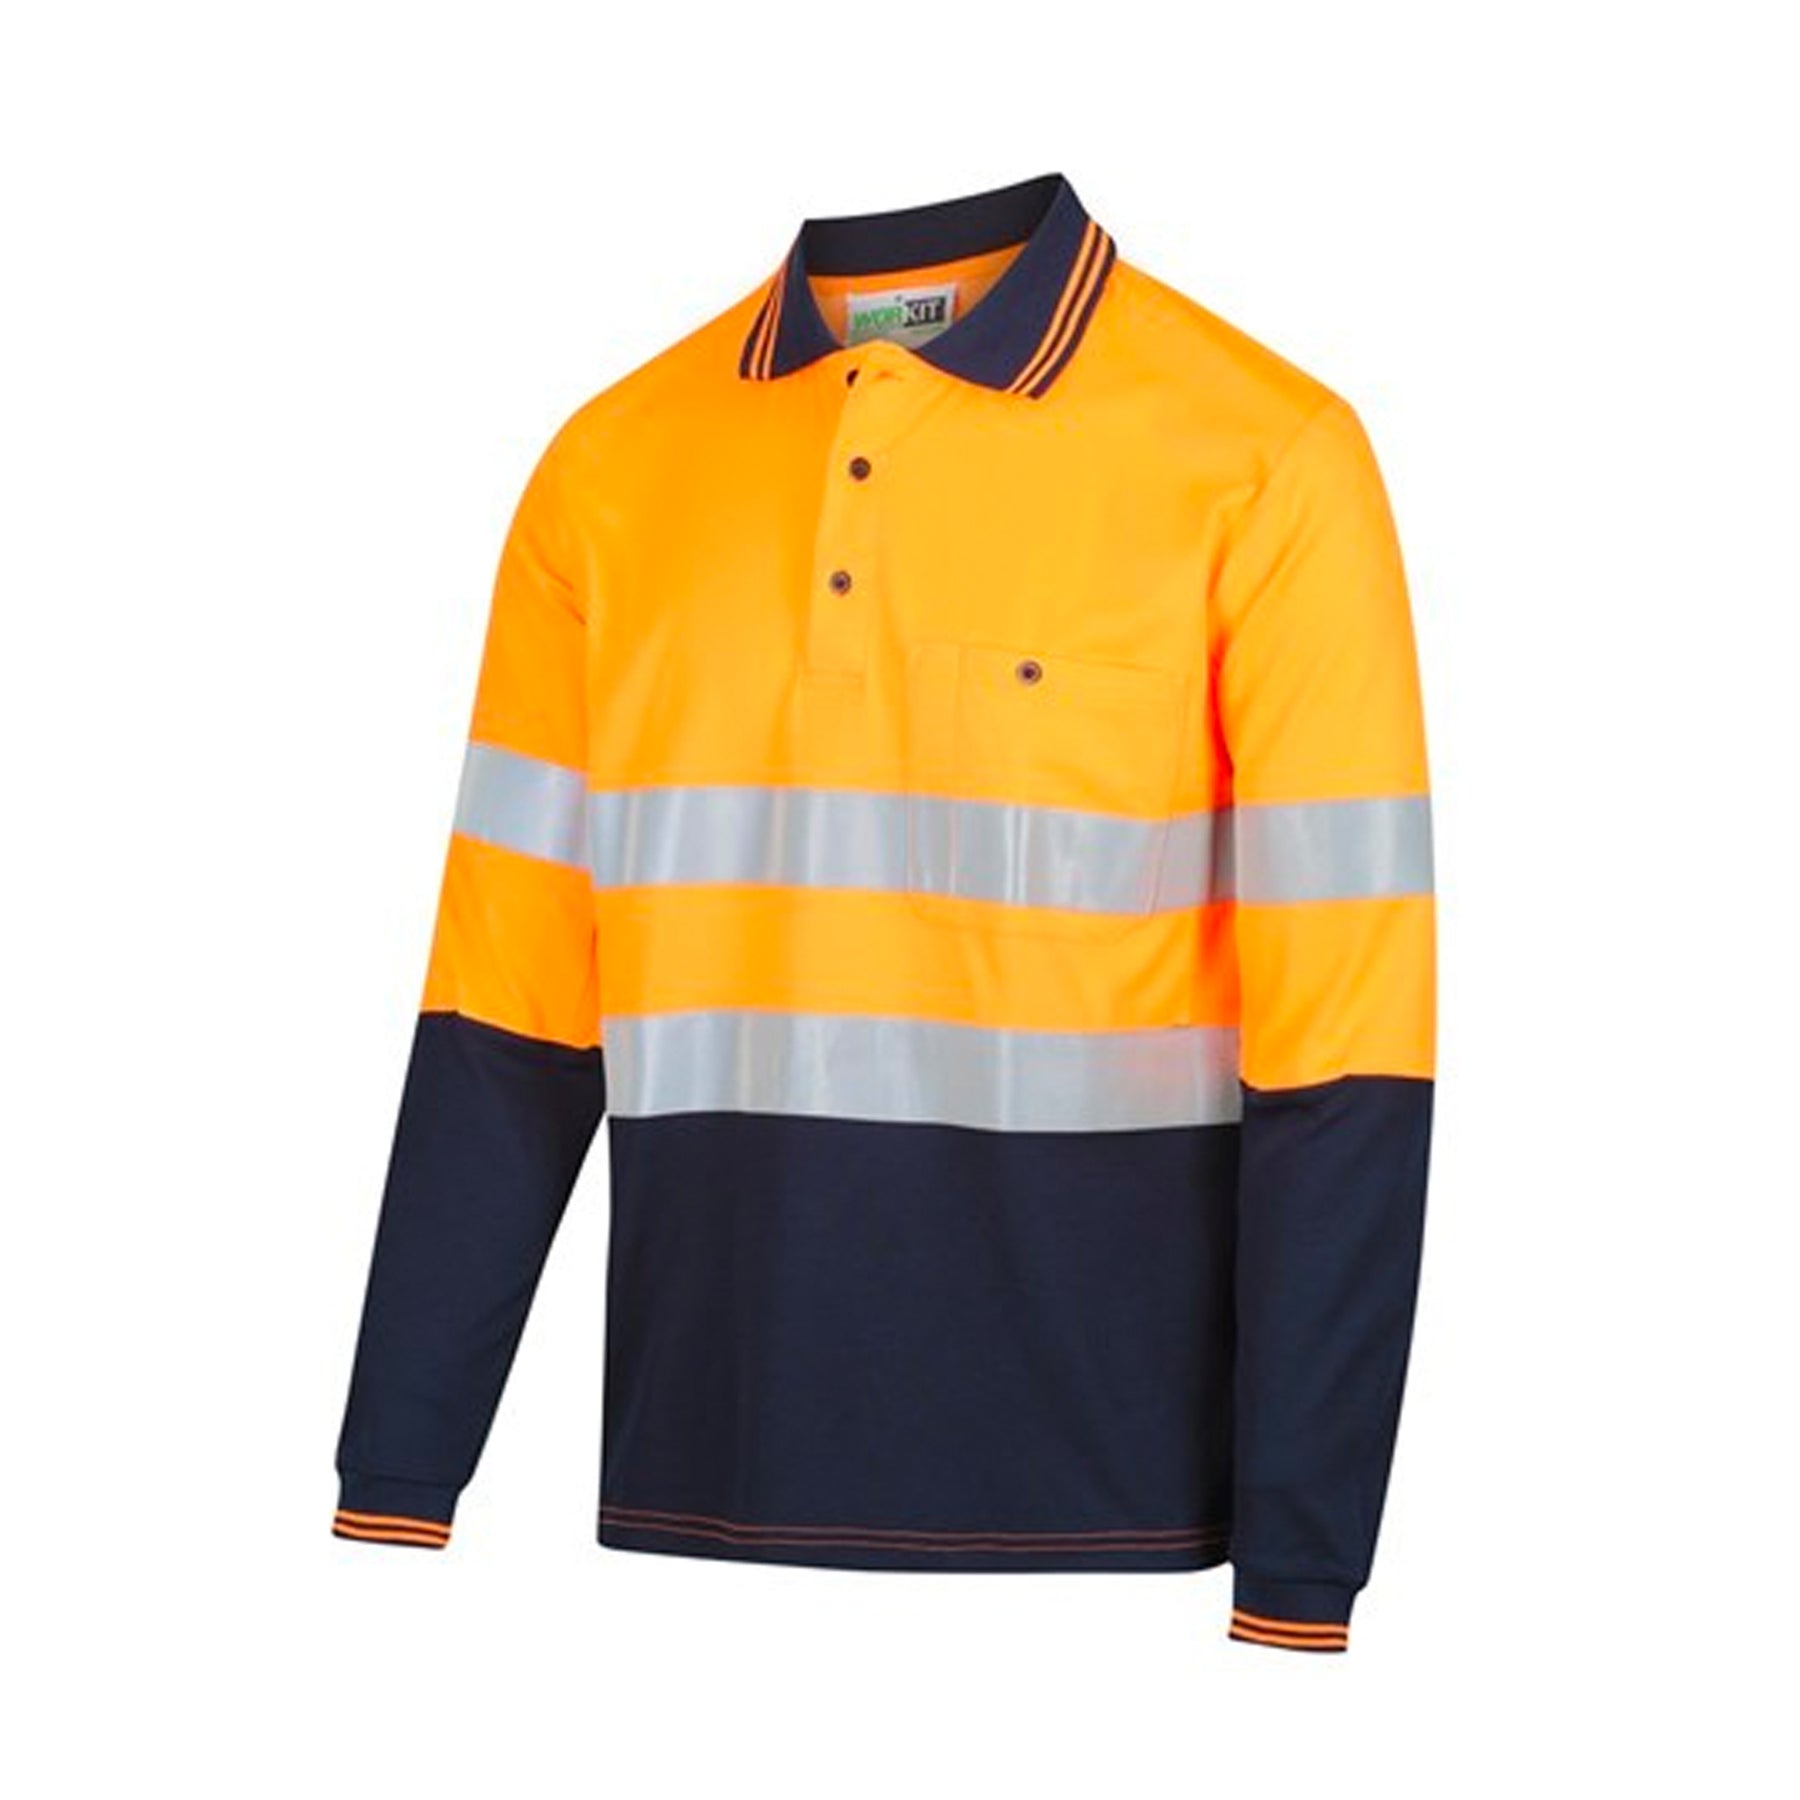 workit workwear kevlar long sleeve taped polo shirt in orange navy